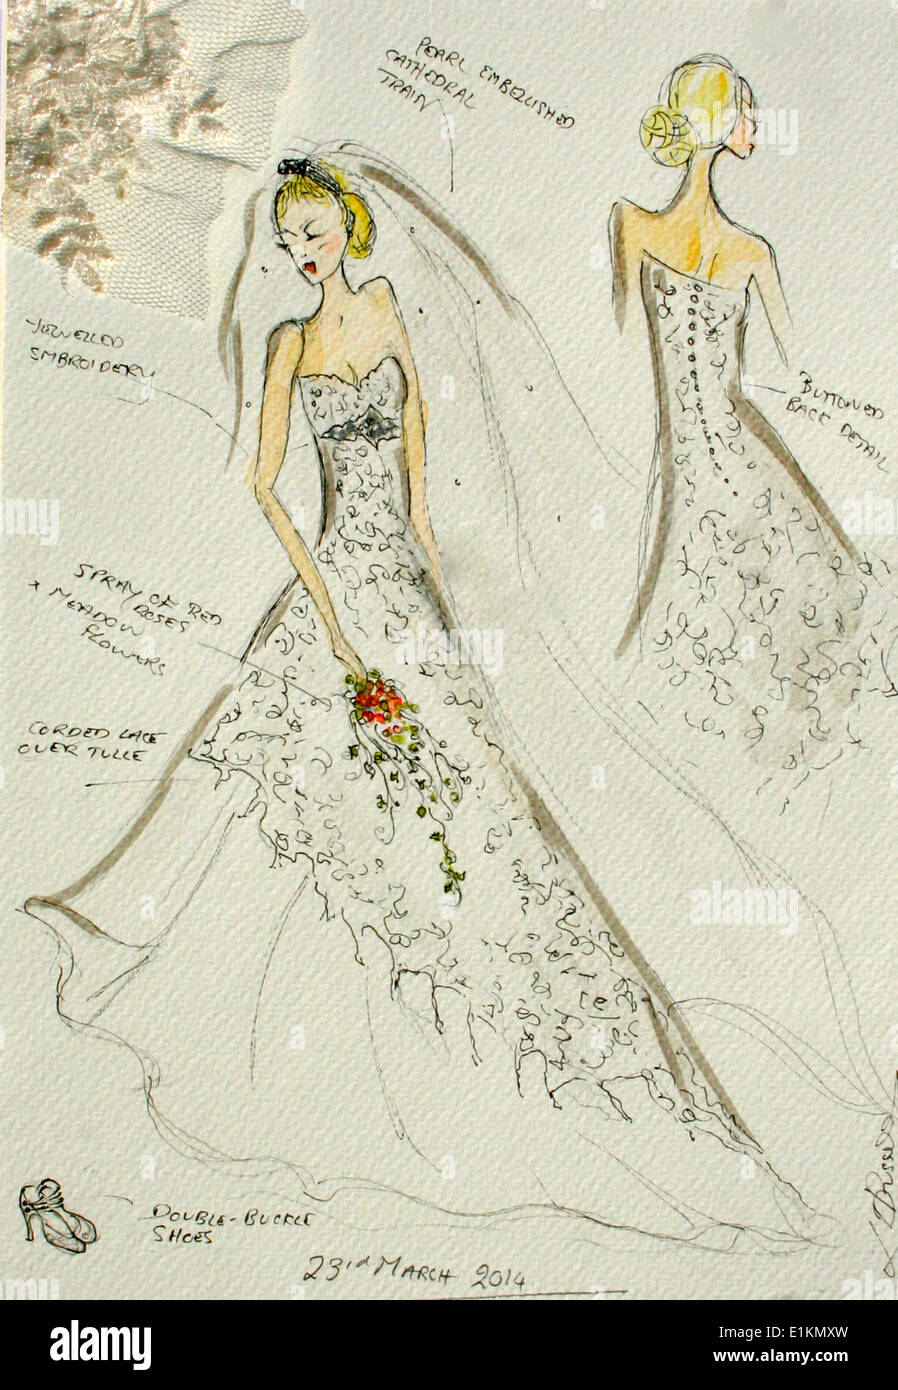 Seethrough Clothing, dance Dress, wedding Dress, lace, Bride, gown, day  Dress, Sketch, fashion Illustration, fashion Design | Anyrgb